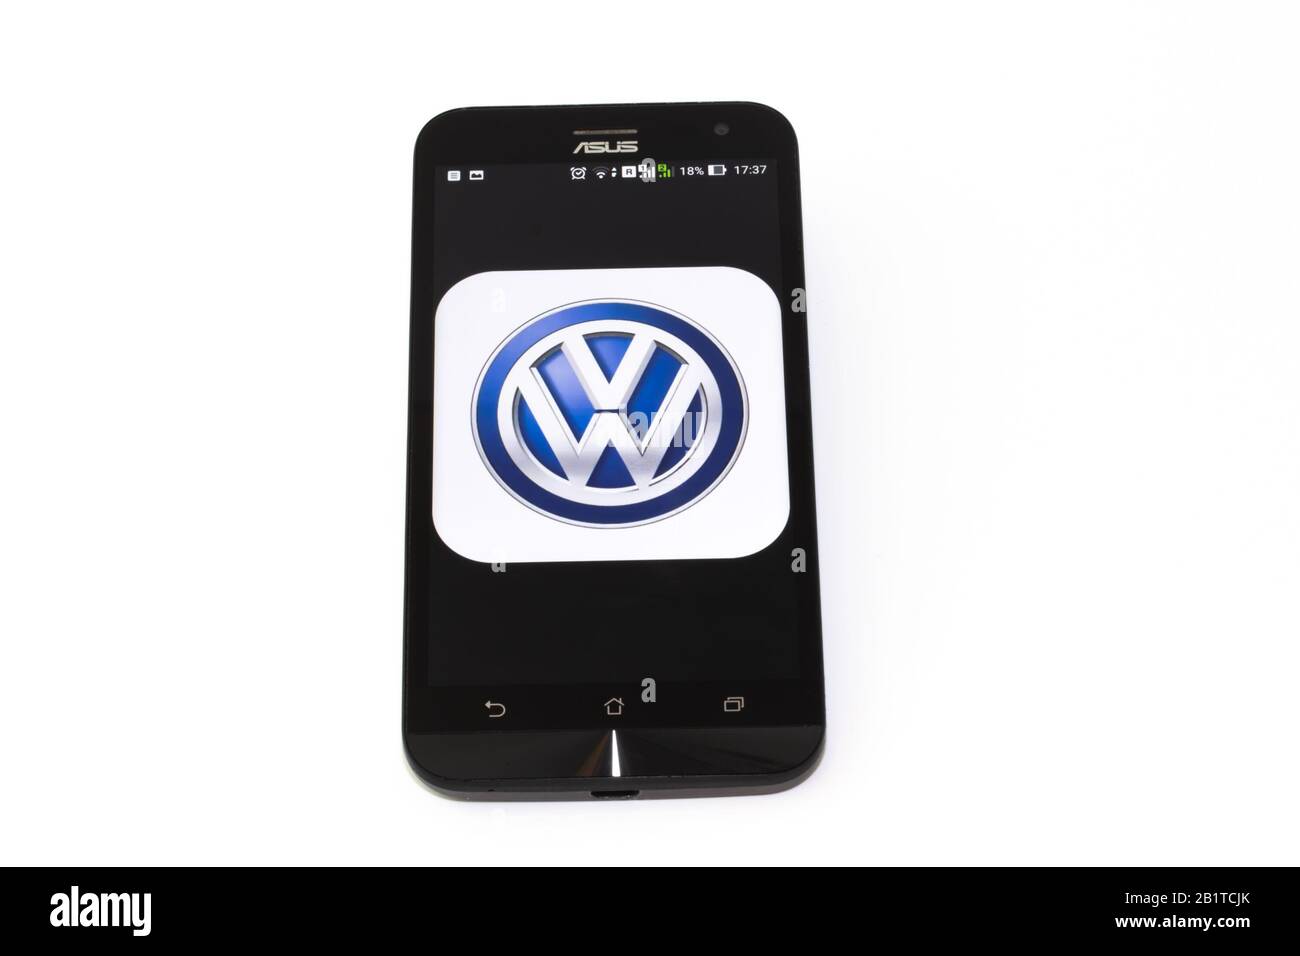 Kouvola, Finlande - 23 janvier 2020: Logo de l'application Volkswagen sur l'écran du smartphone Asus Banque D'Images